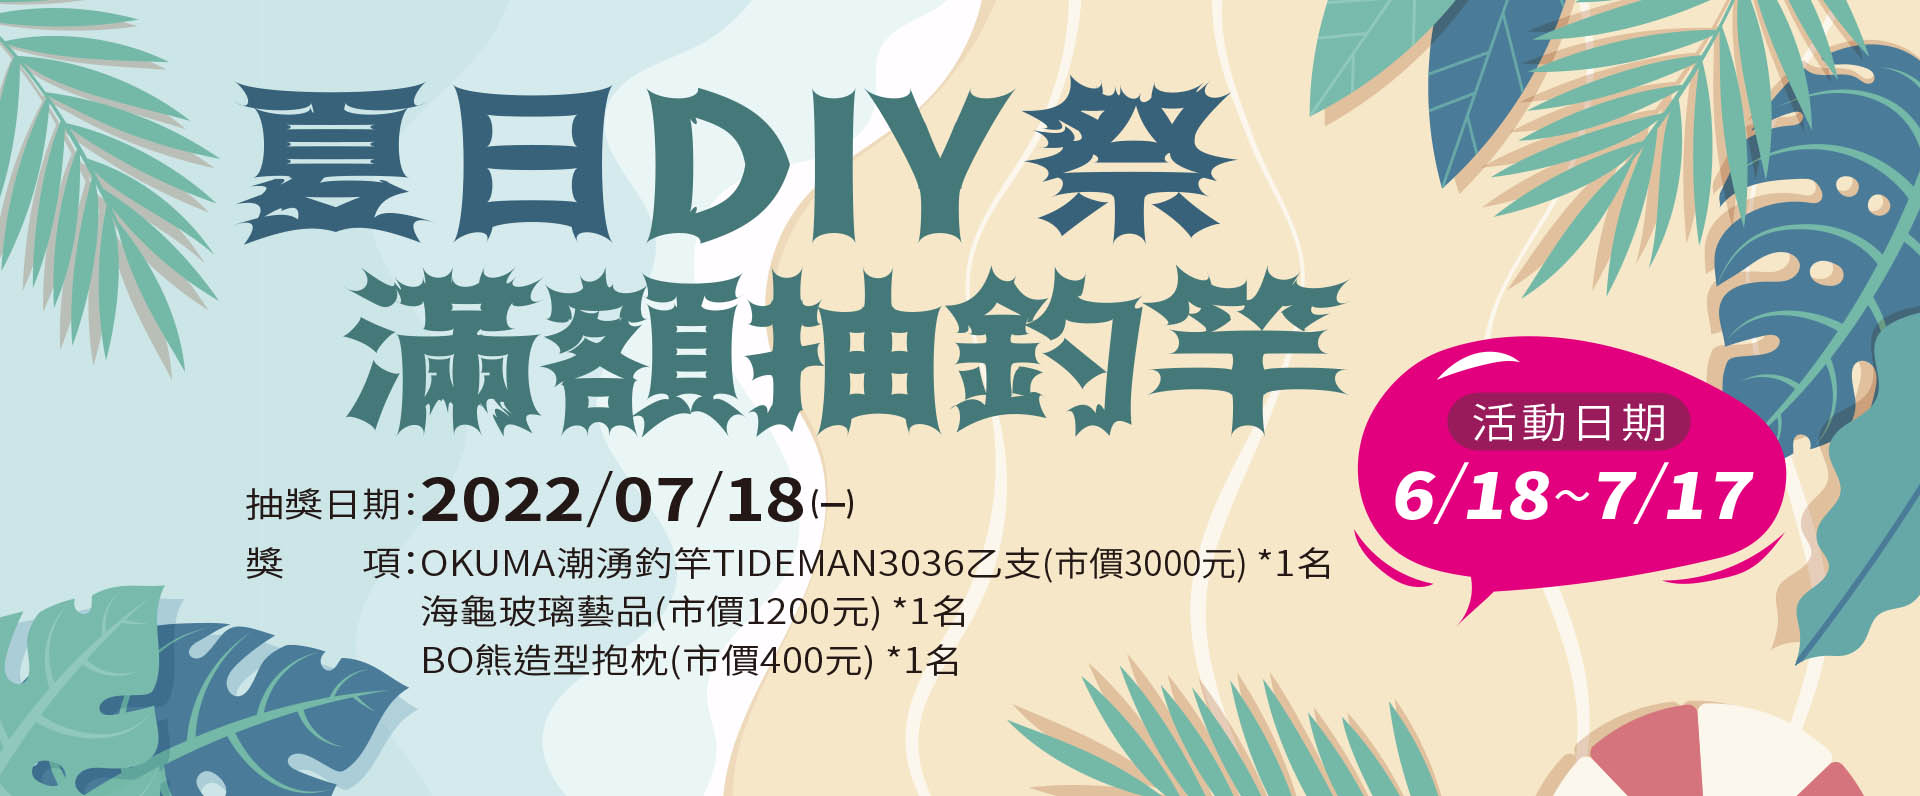 夏日DIY祭-滿額抽釣竿